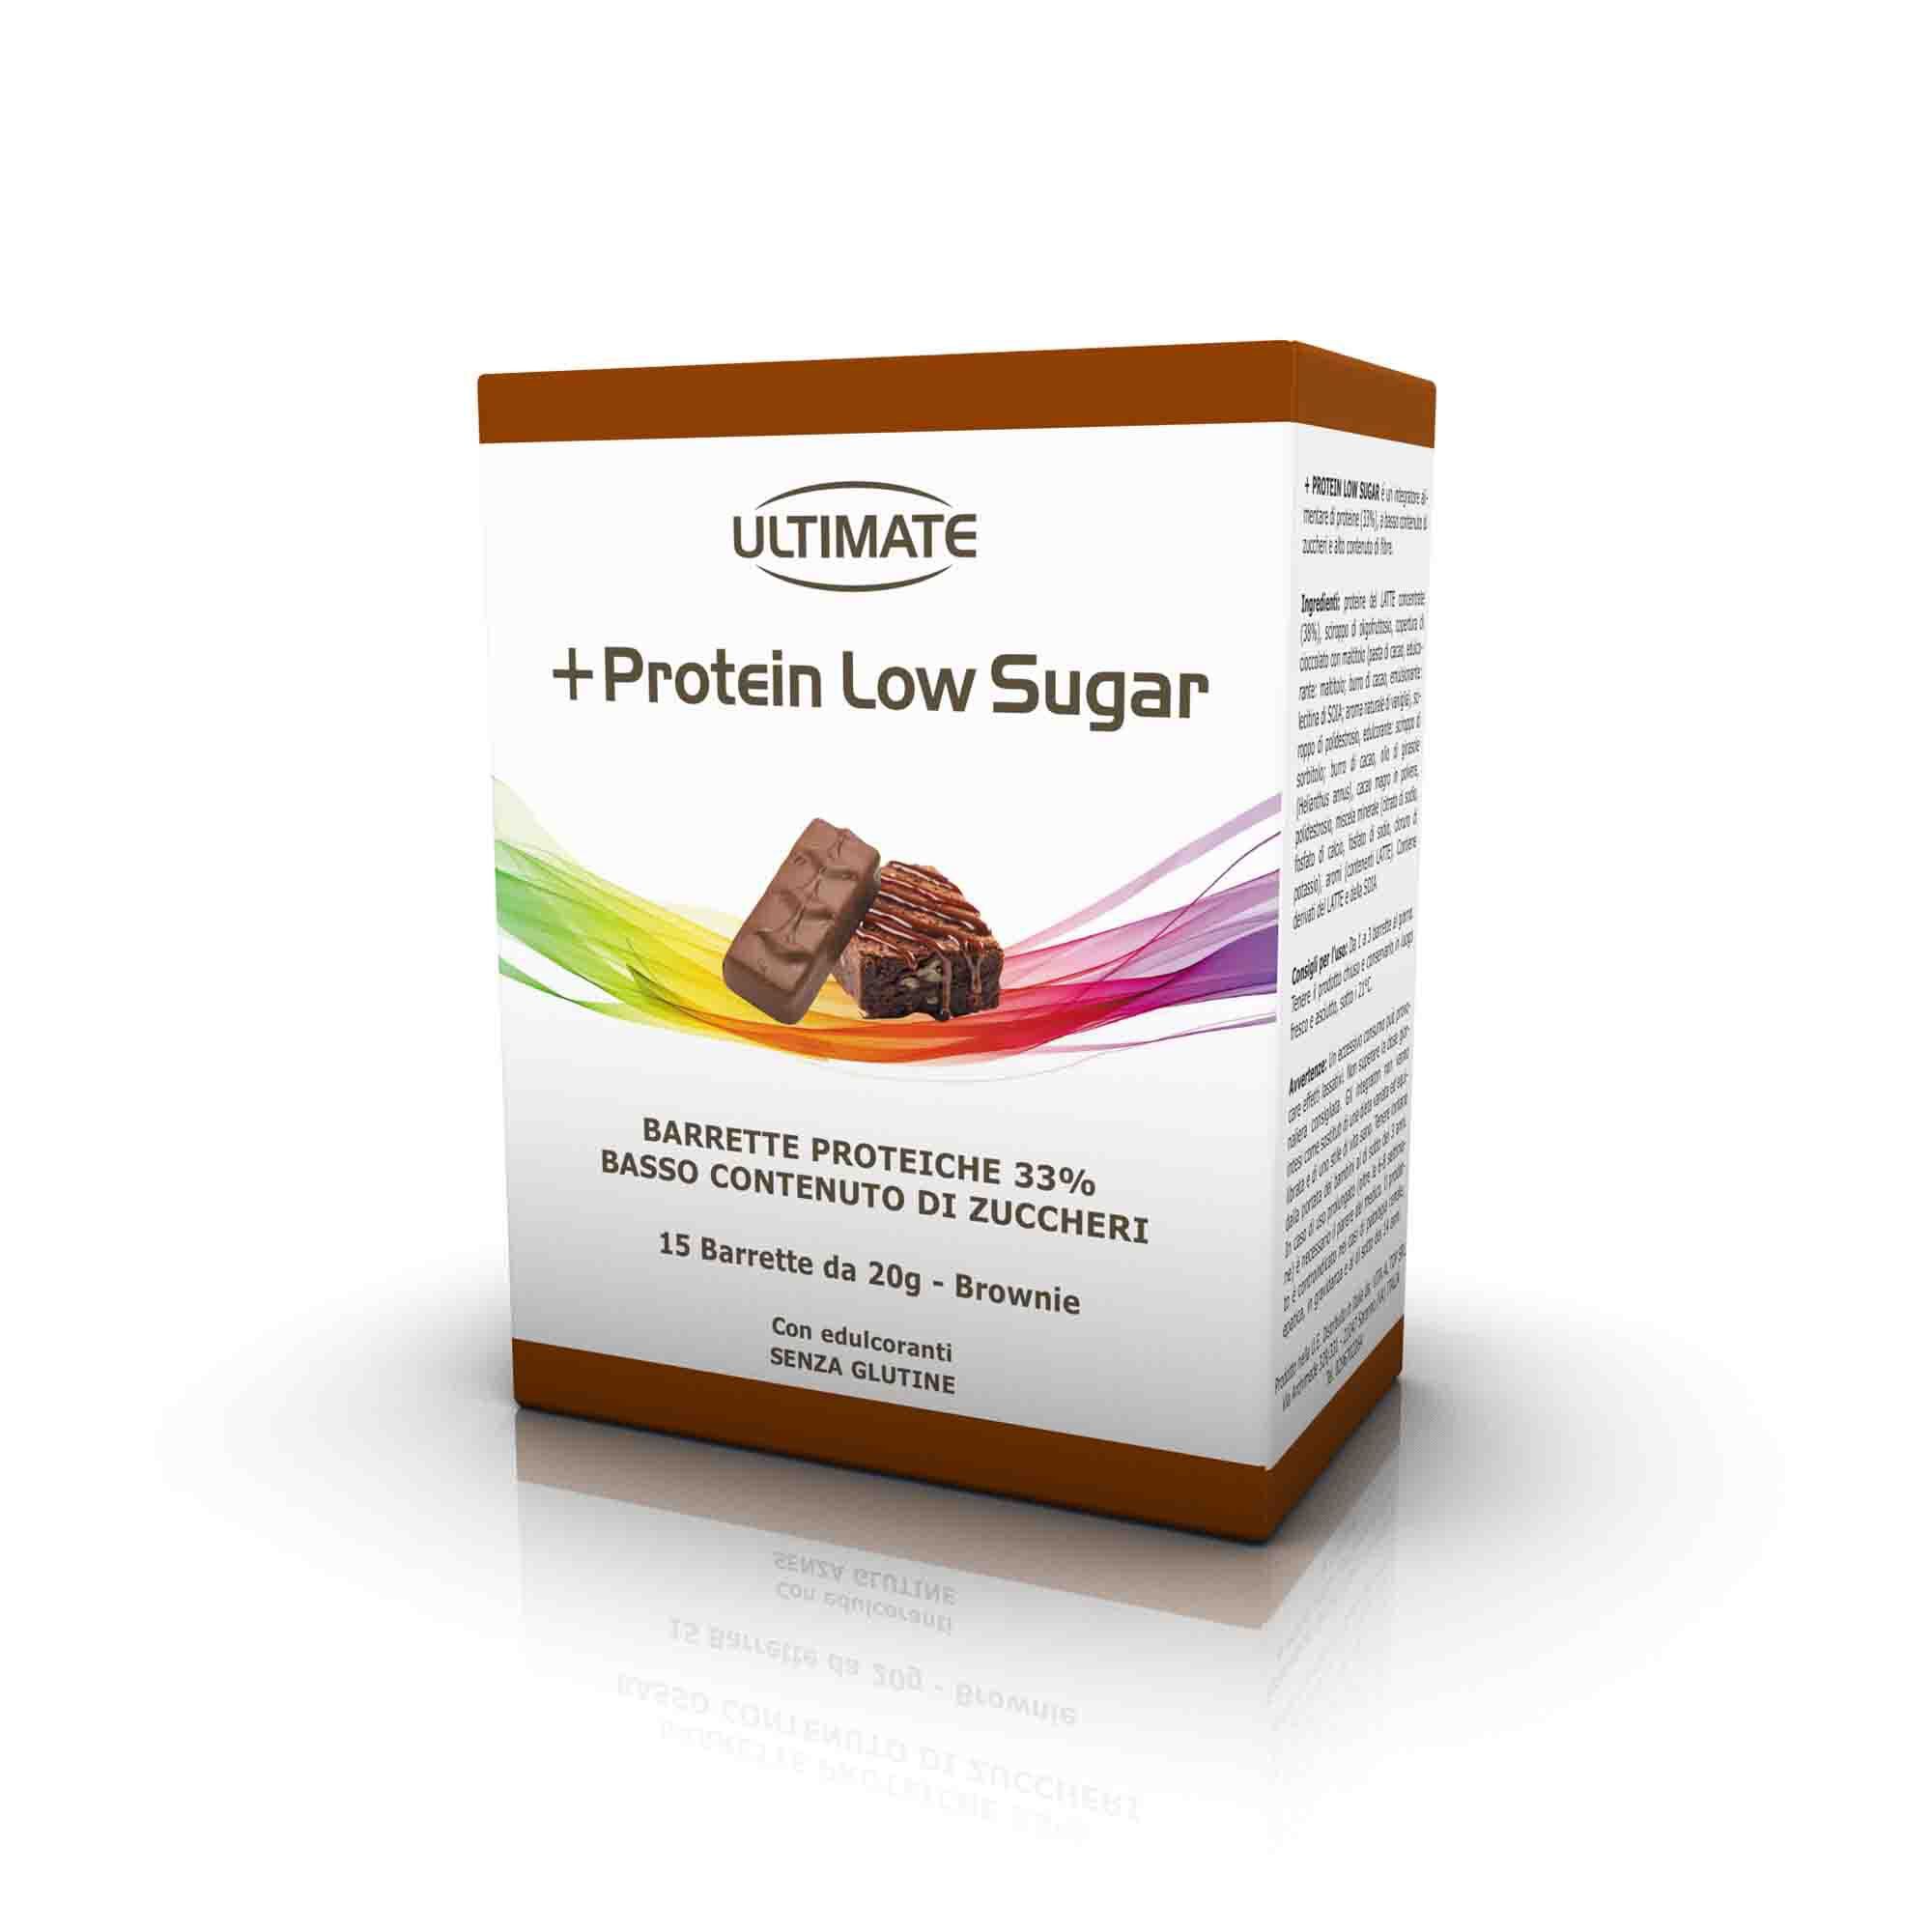 Image of Protein Low Sugar barrette proteiche a basso contenuto di zuccheri